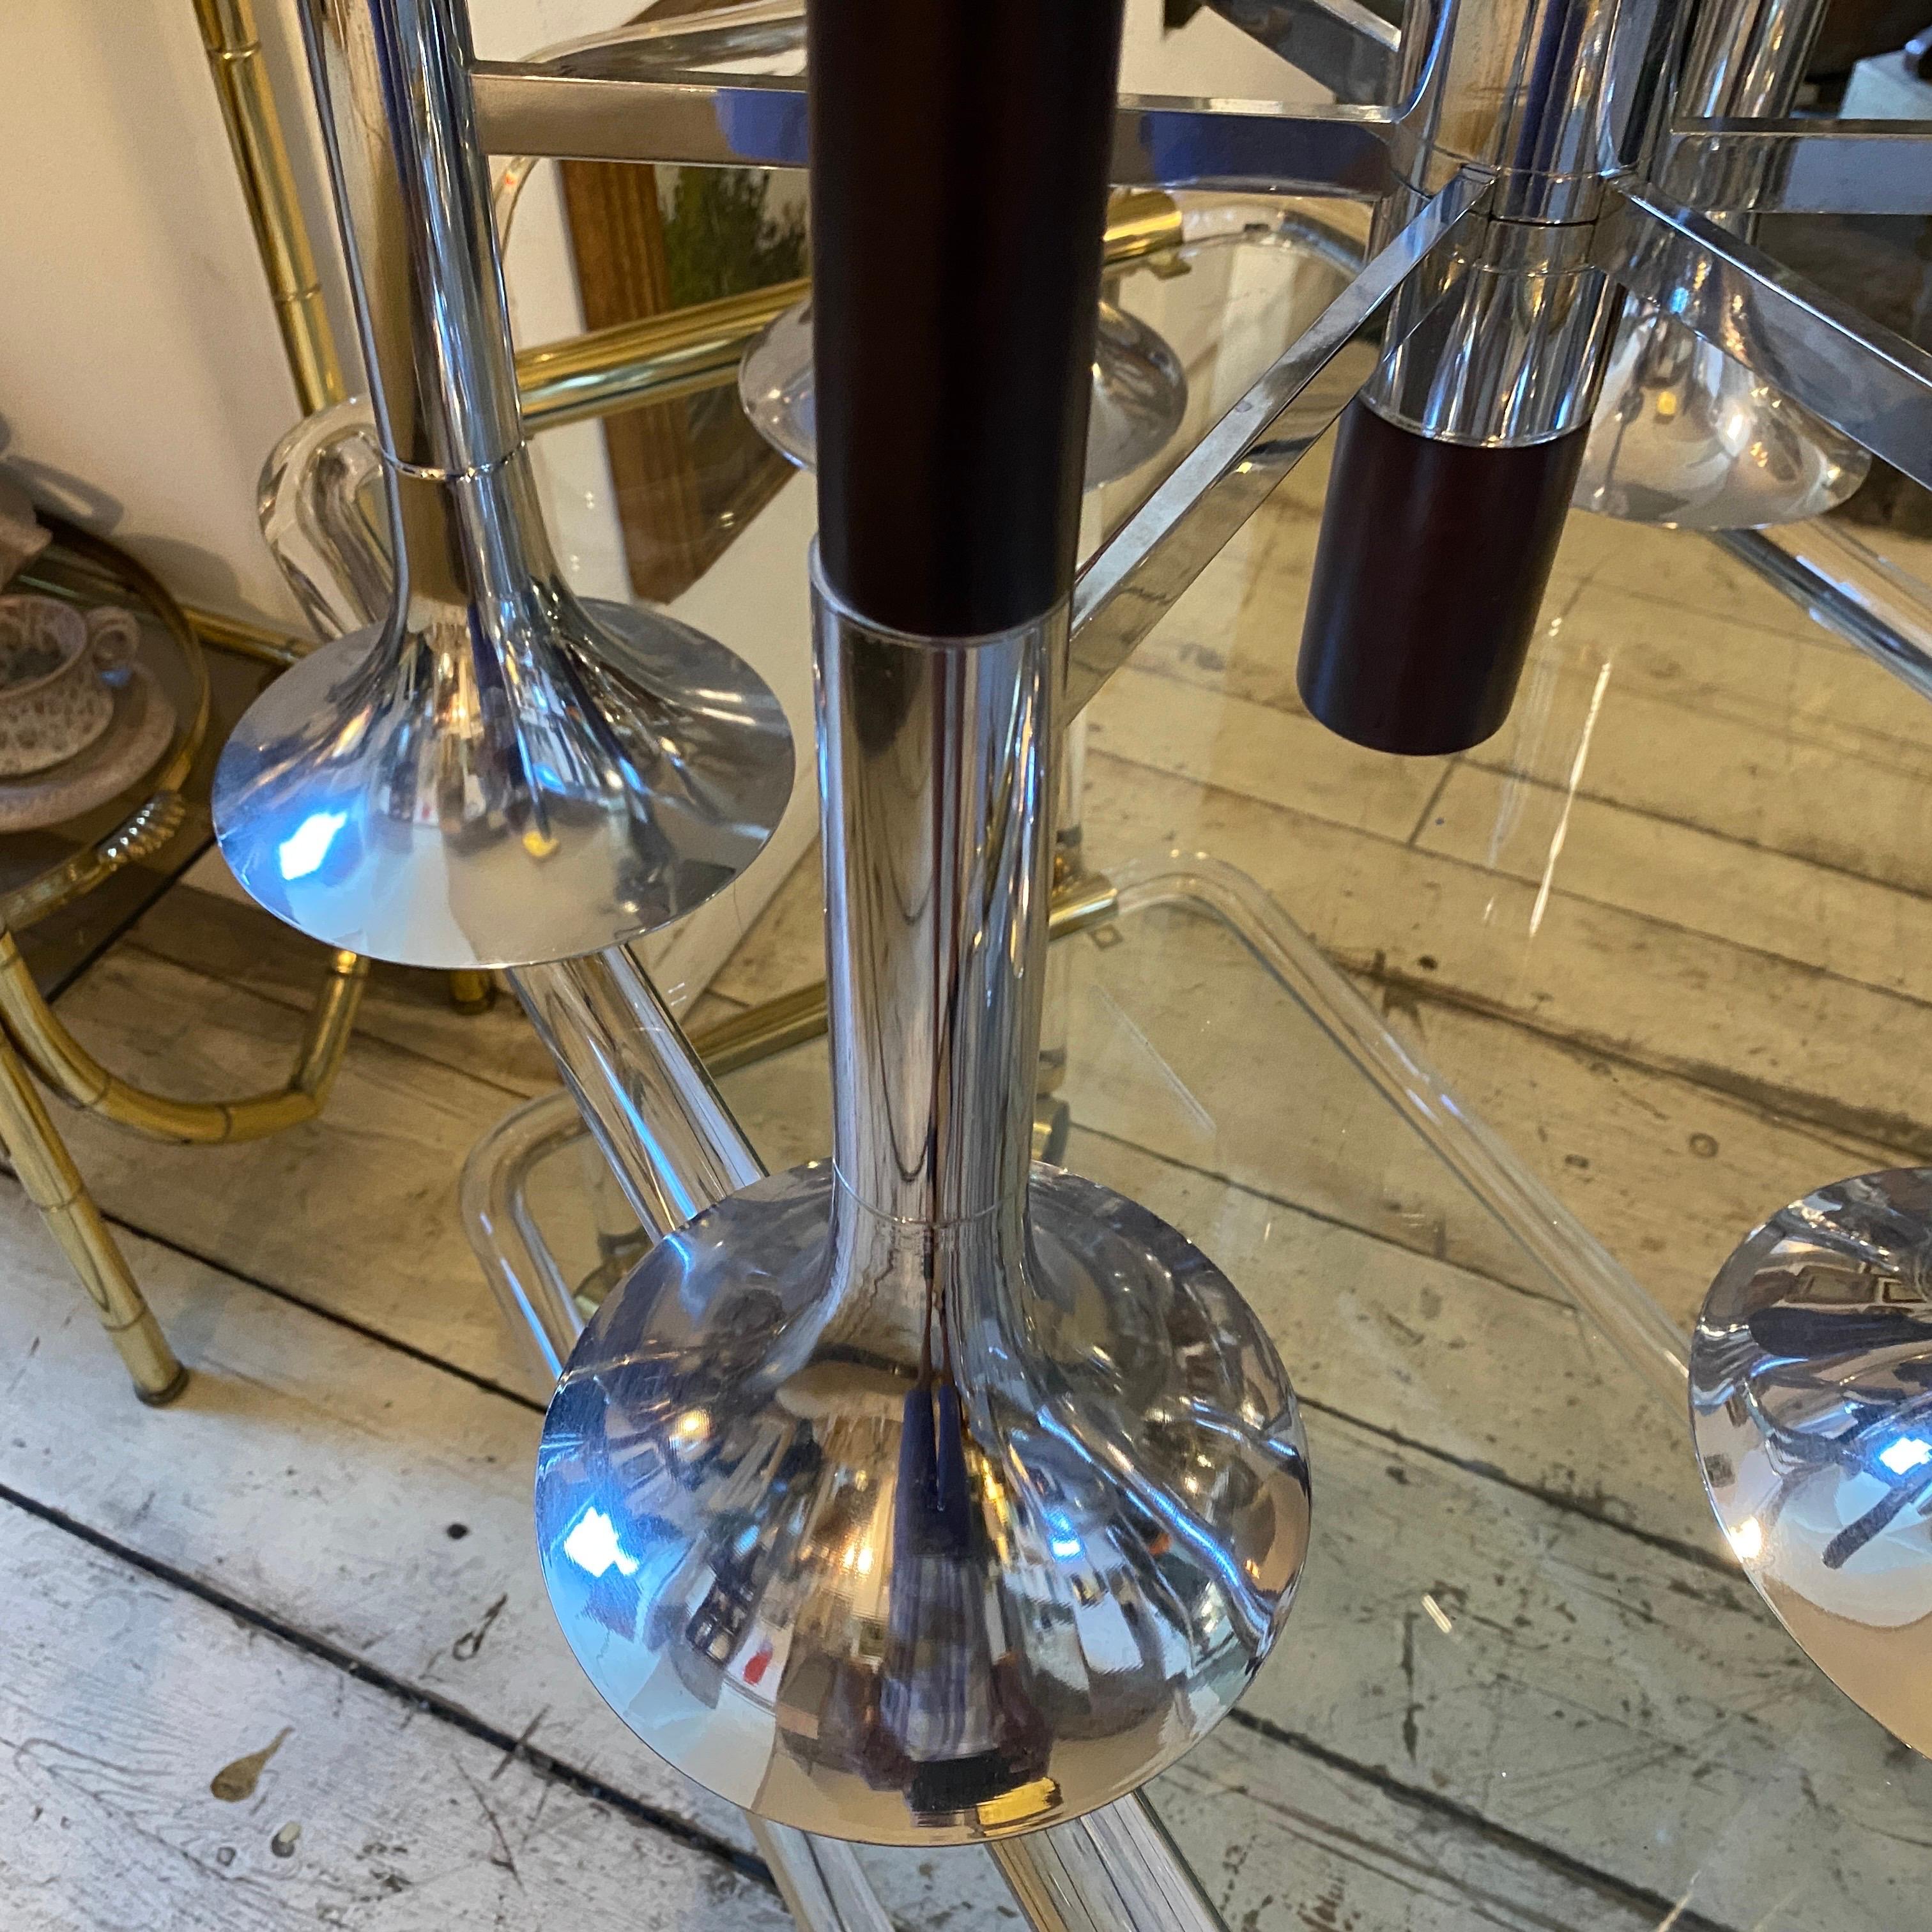 Un étonnant lustre à six lumières en acier chromé et bois, conçu et fabriqué en Italie dans le style de Reggiani dans les années 70. Il est en état de marche, fonctionne à la fois en 110 et 240 volts et nécessite six ampoules ordinaires e27